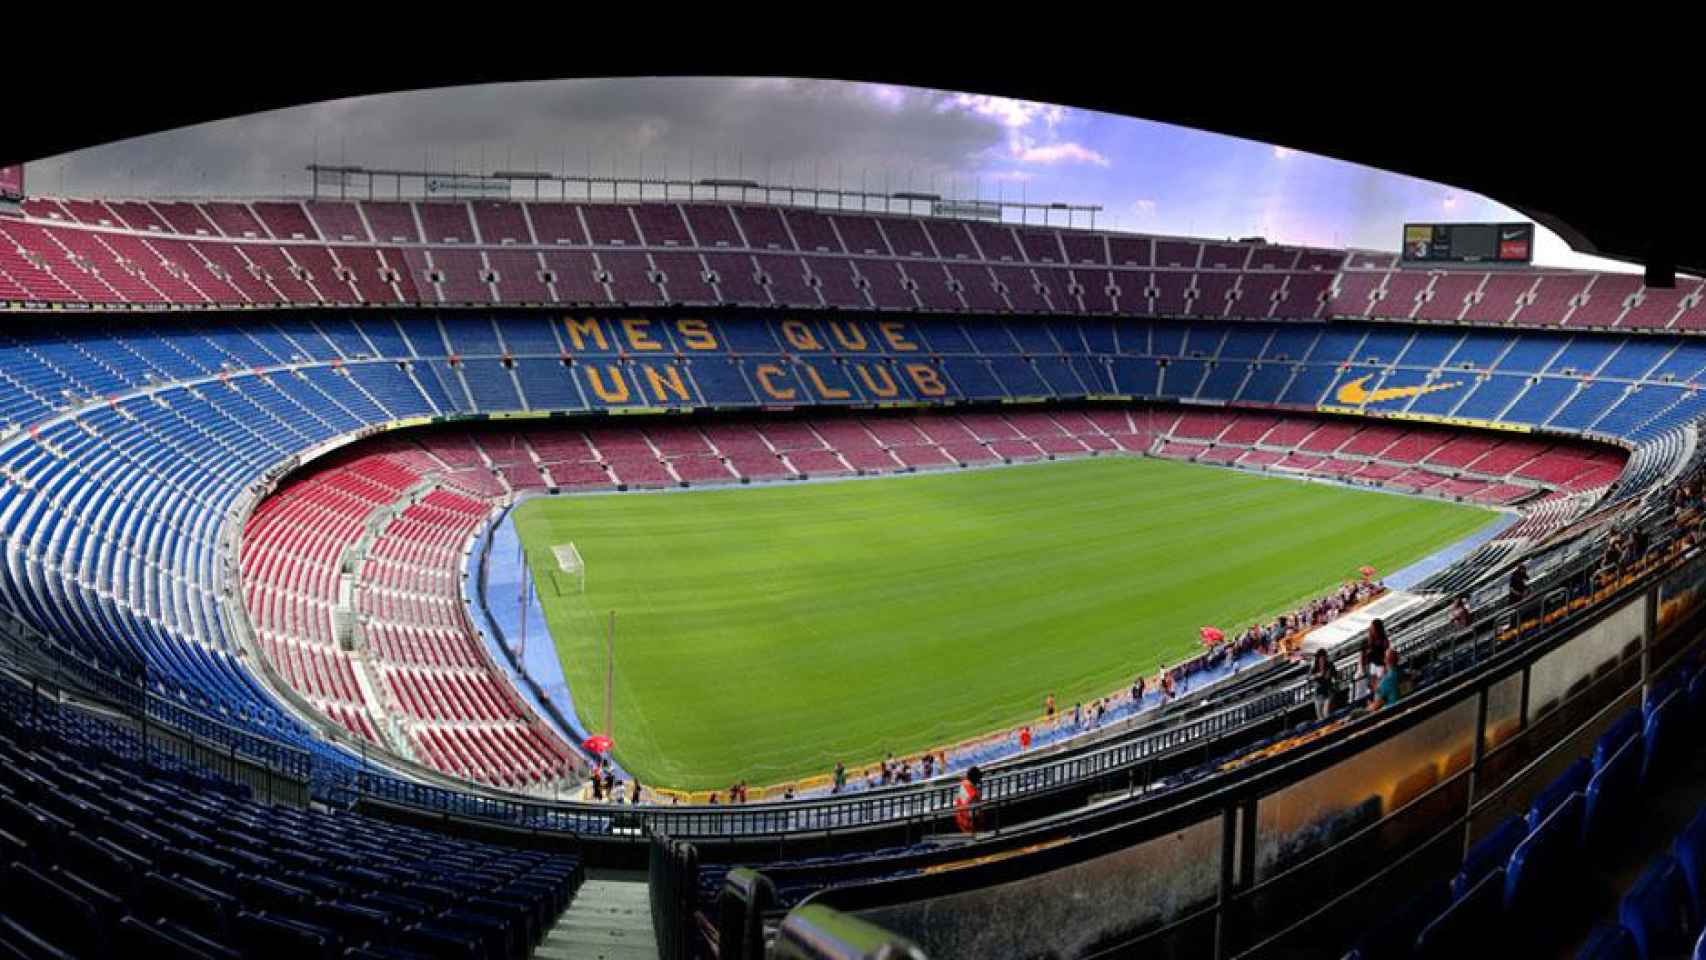 El Barça tiene un santuario conocido bajo el nombre de Camp Nou / PIOTR MATYJA - WIKIMEDIA COMMONS